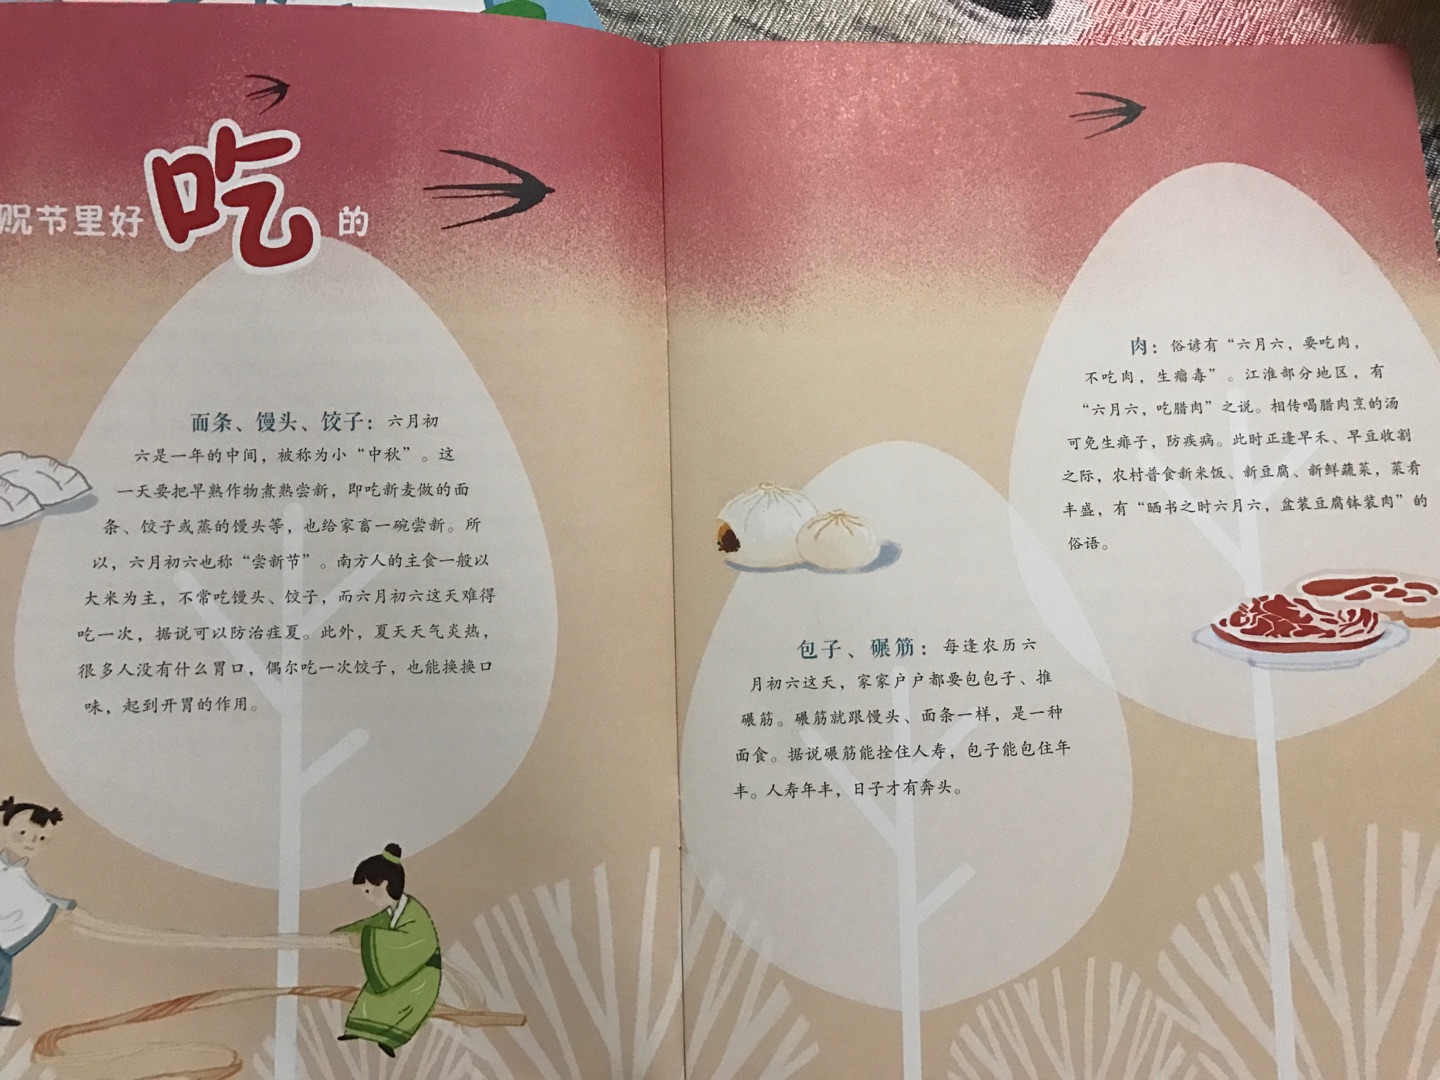 第一次知道有这个节日，通过绘本才知道六月六有回娘家的习俗，知道了天贶节的来历。通过学习书知道了天贶节相关的习俗和诗词，通过游戏书玩一些小游戏。整套书让小孩子在边看边玩中学习了传统节日，学习中华民族传统文化。